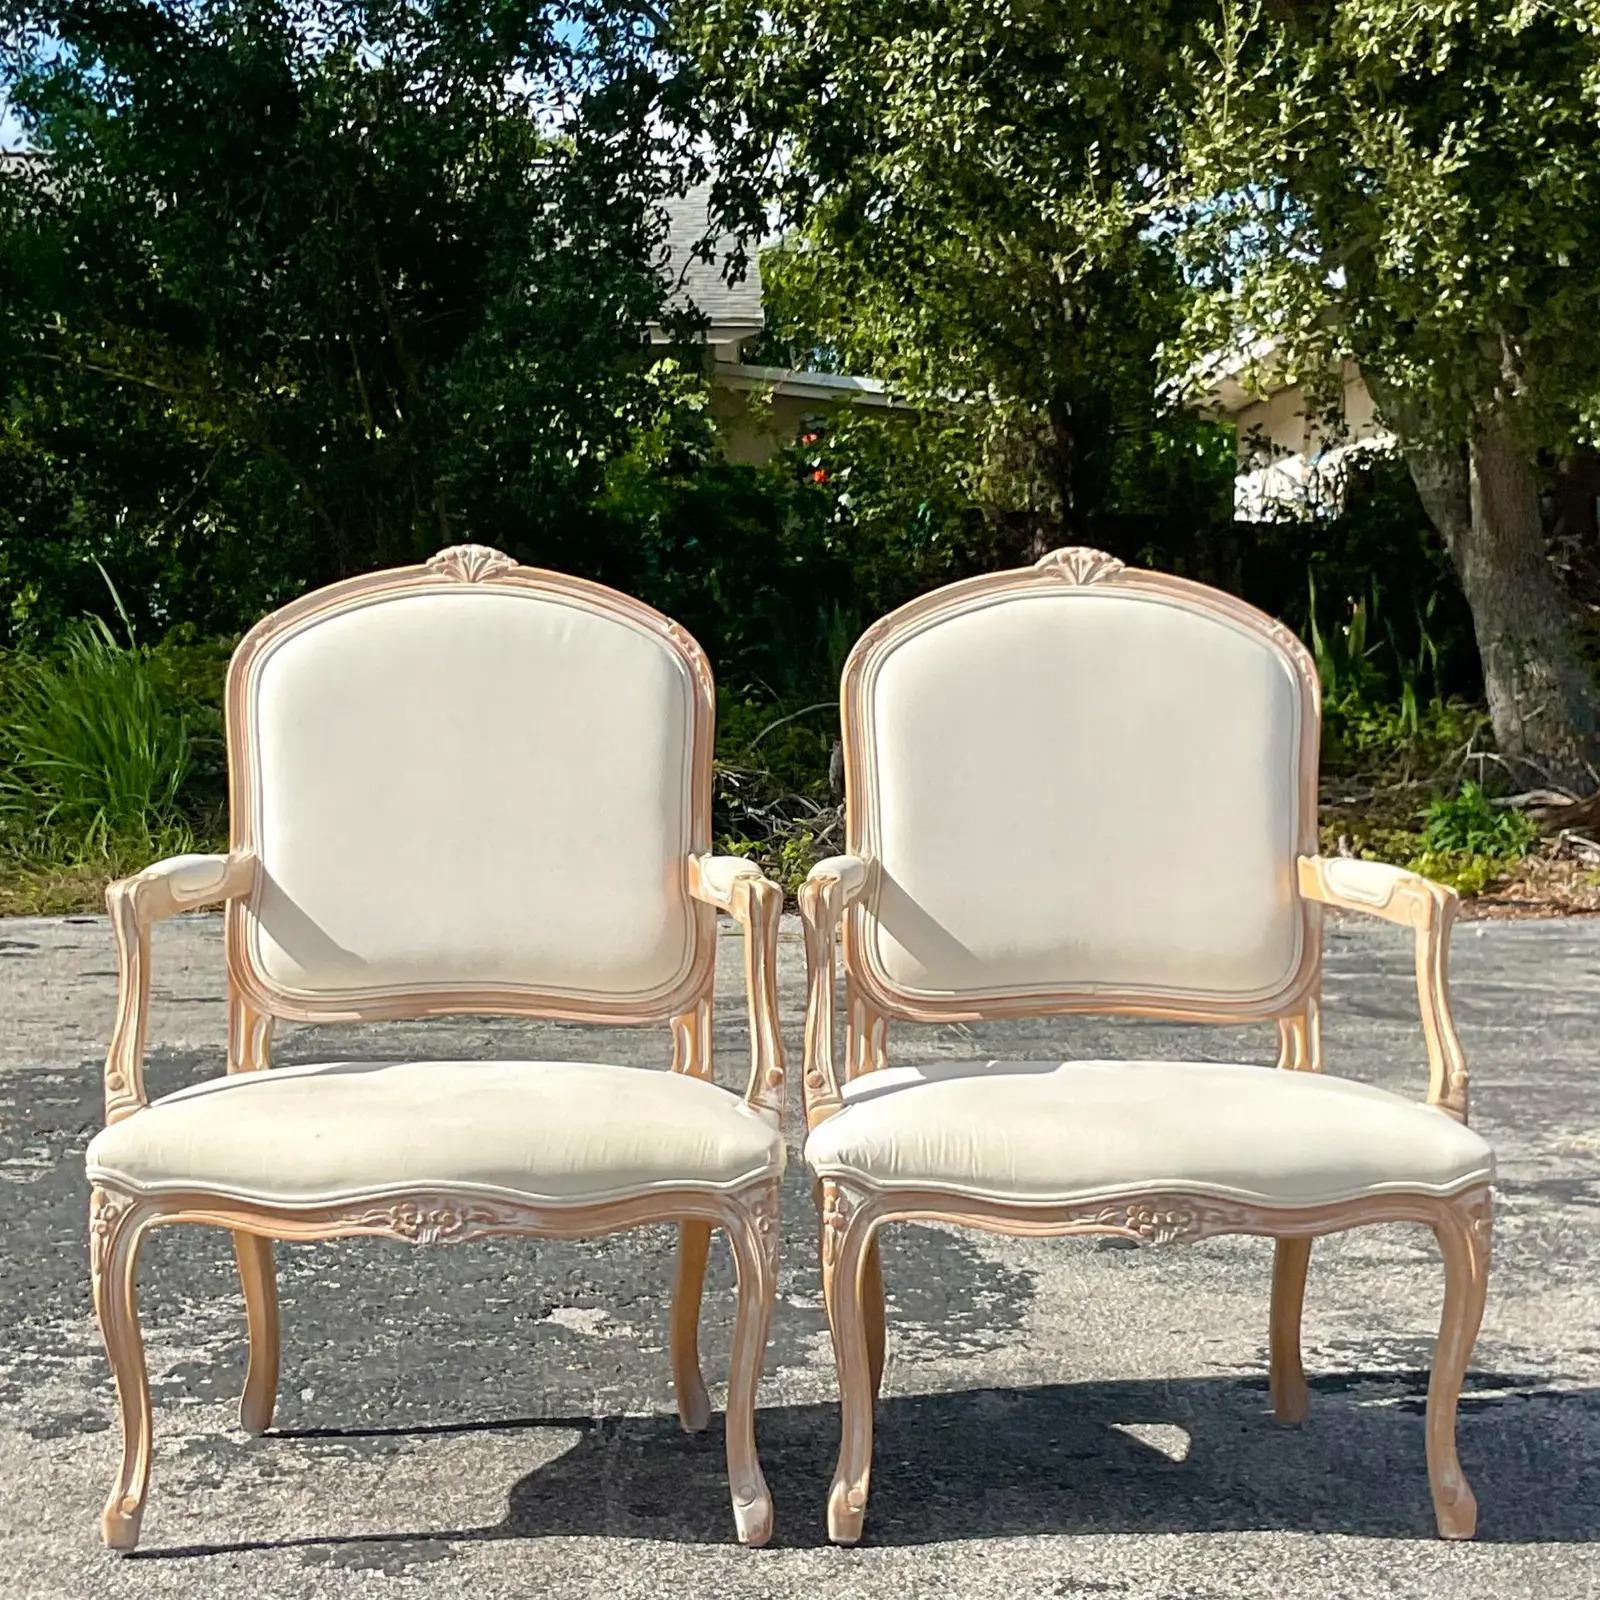 Une fabuleuse paire de chaises Bergère Regency vintage. Magnifique détail sculpté à la main sur la forme classique. Acquis d'une propriété de Palm Beach.